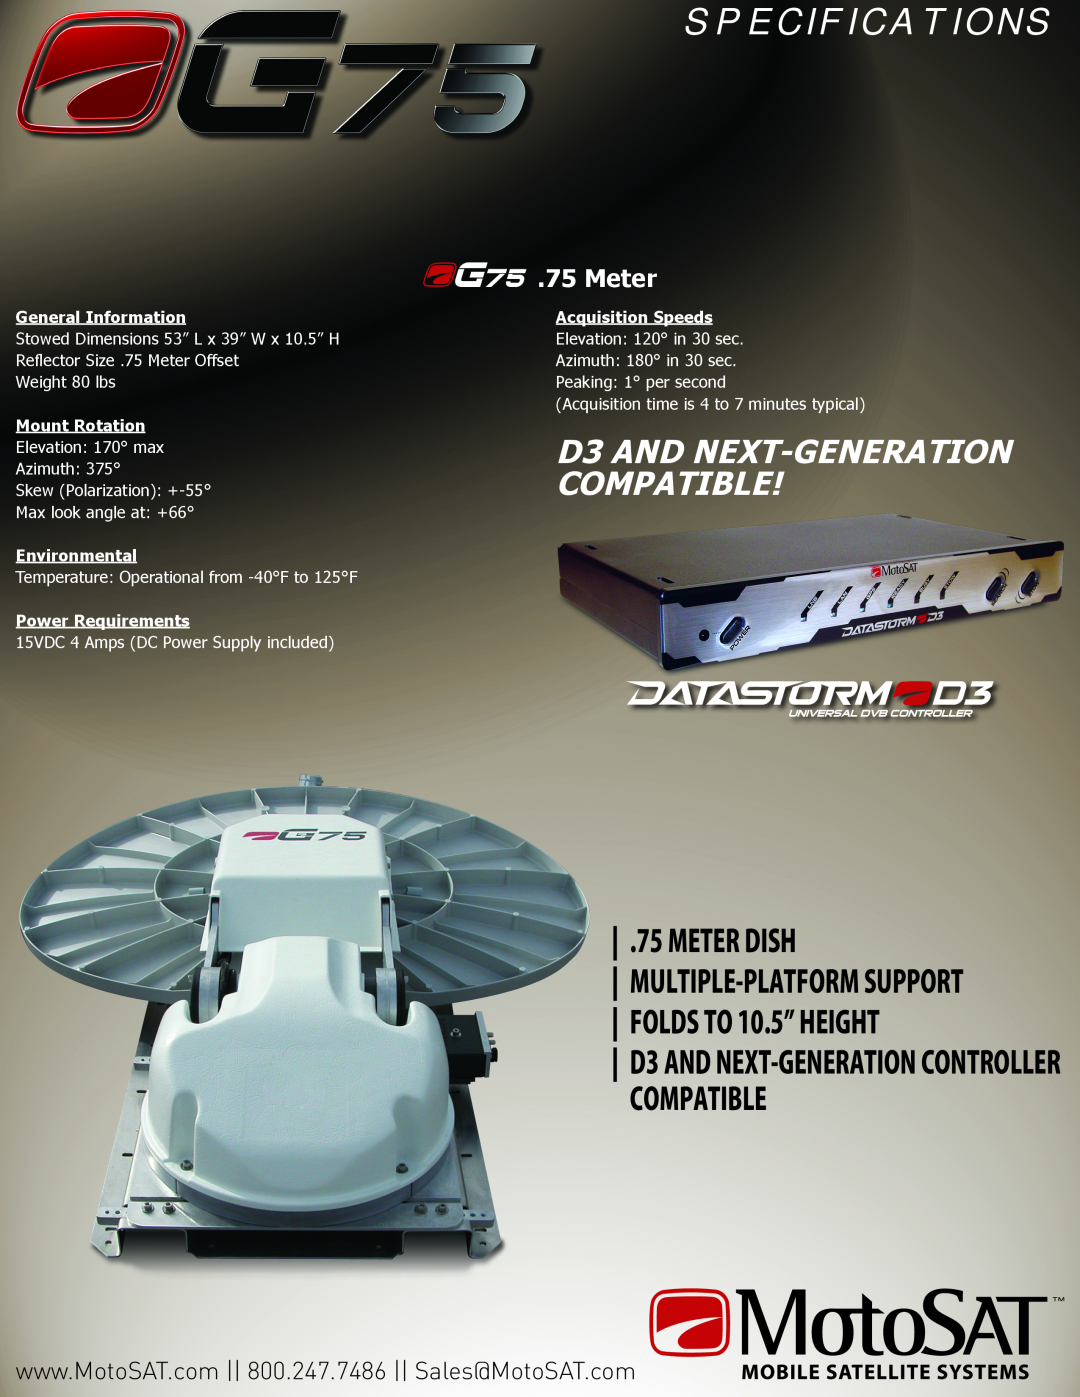 MotoSAT G75 S P E C I F I C A T I O N S, D3 AND NEXT-GENERATION COMPATIBLE, D3 AND NEXT-GENERATION CONTROLLER COMPATIBLE 